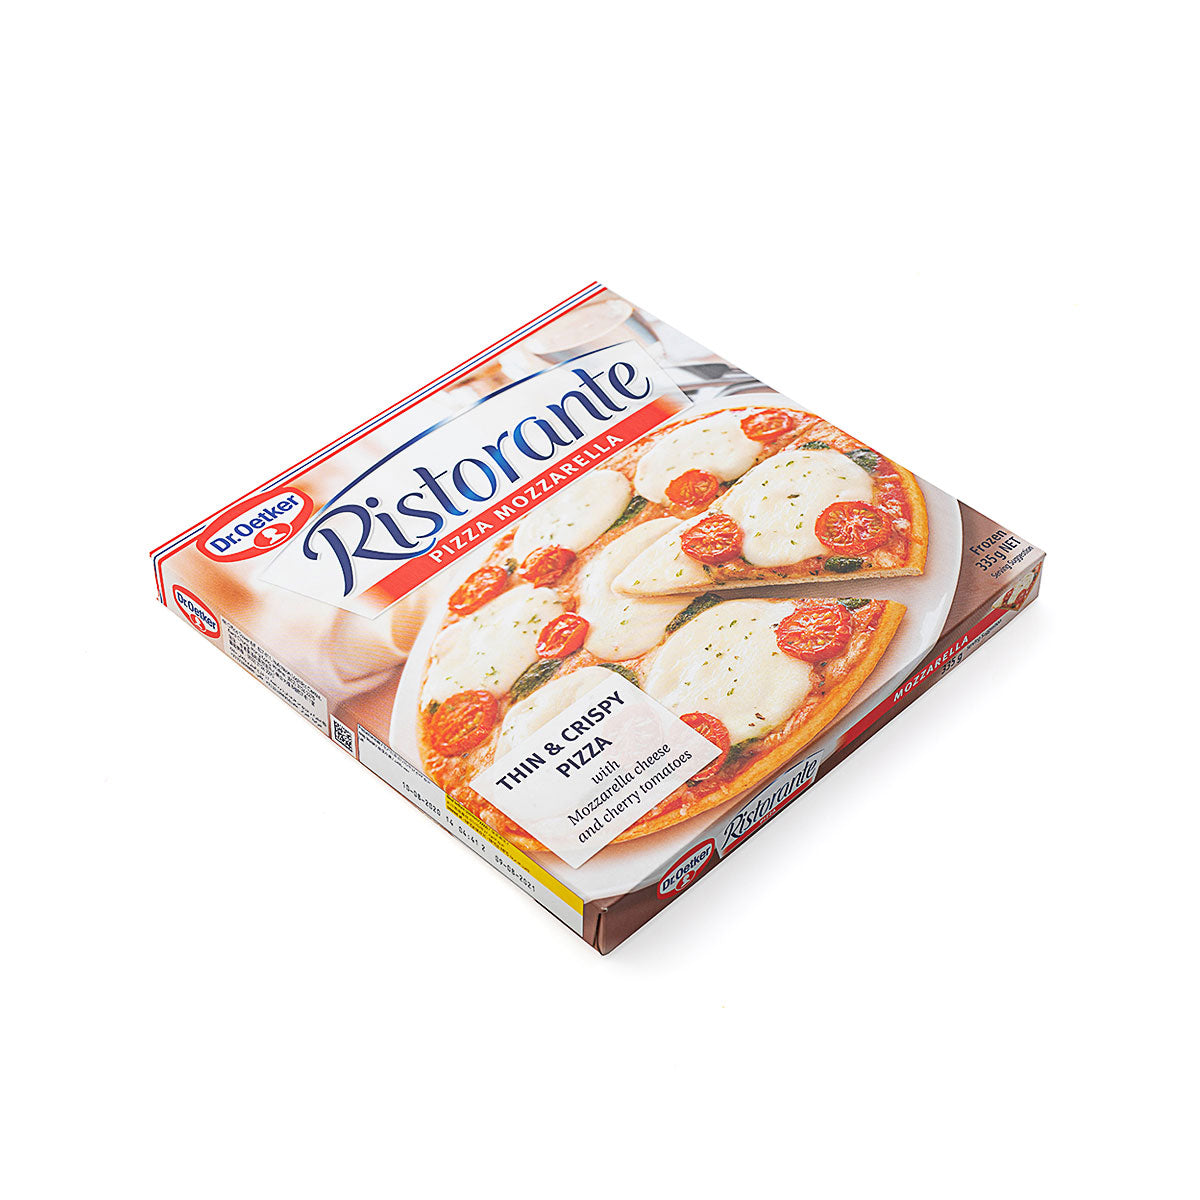 Ristorante Pizza Mozzarella 335g